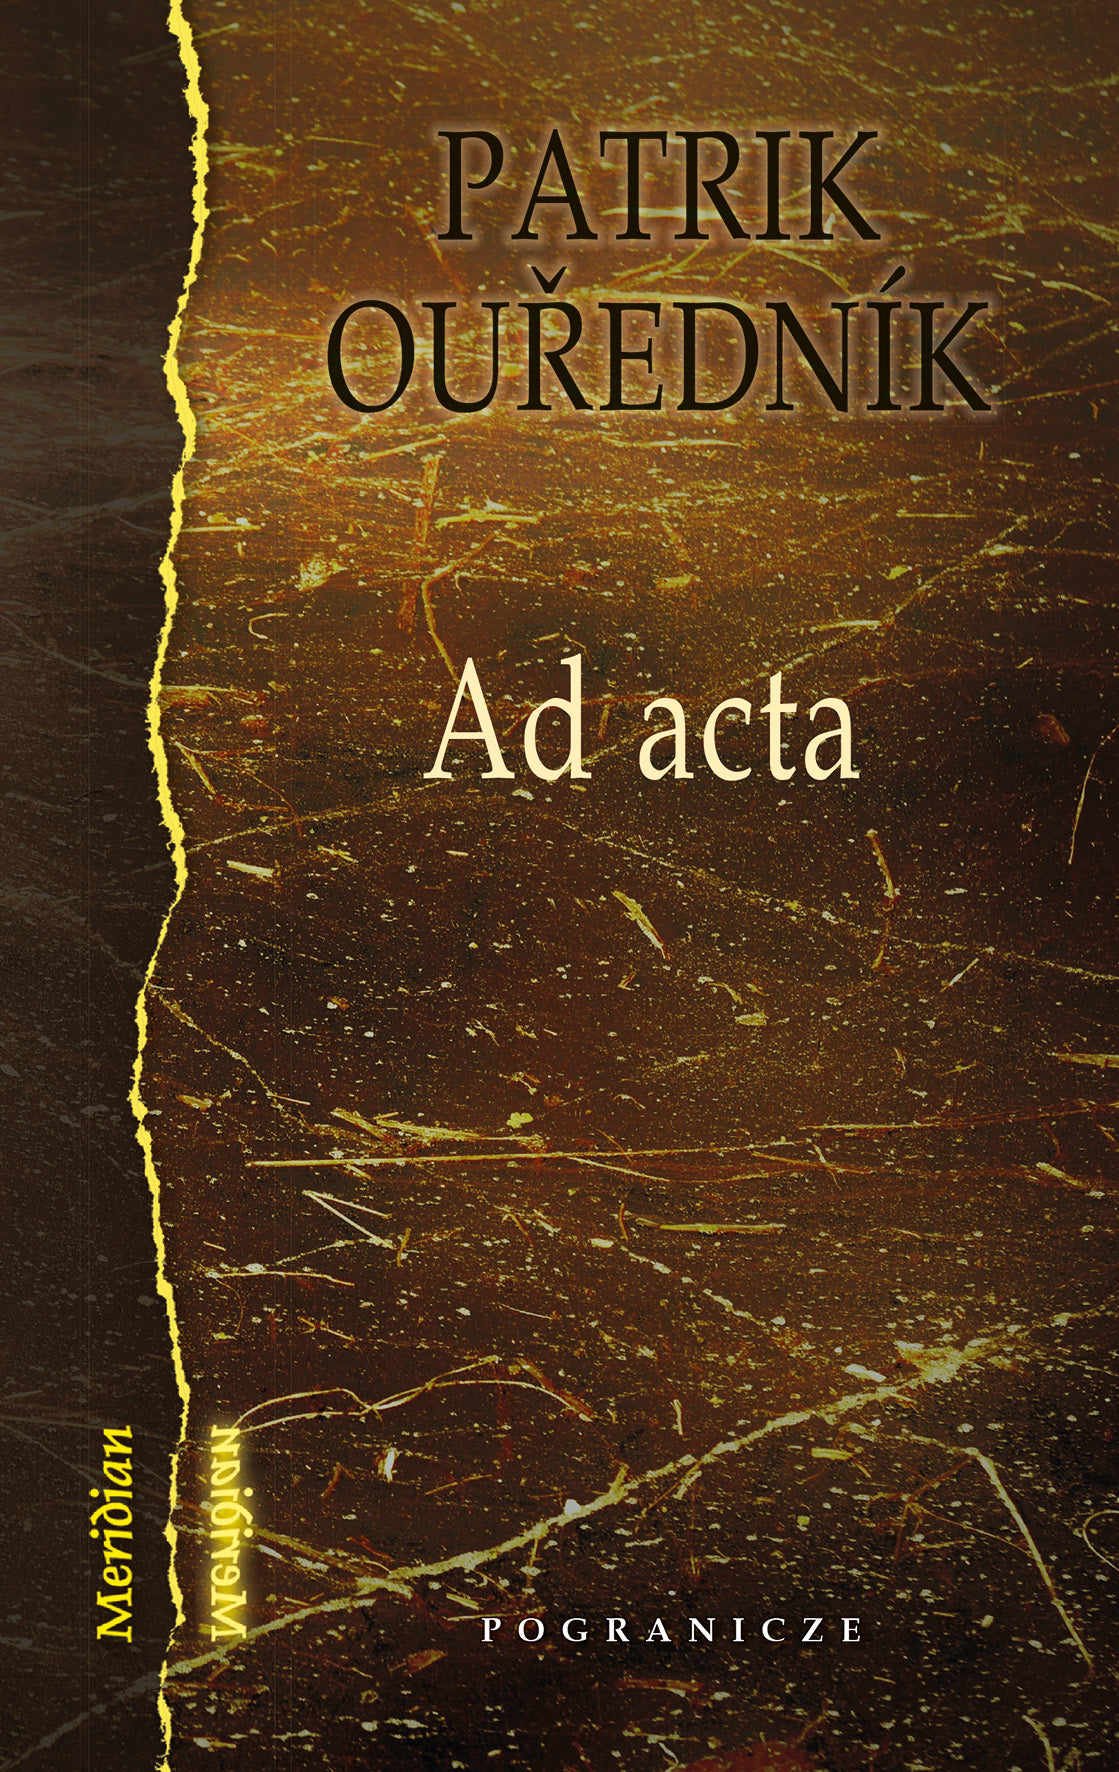 Ad acta, Patrik Ouředník